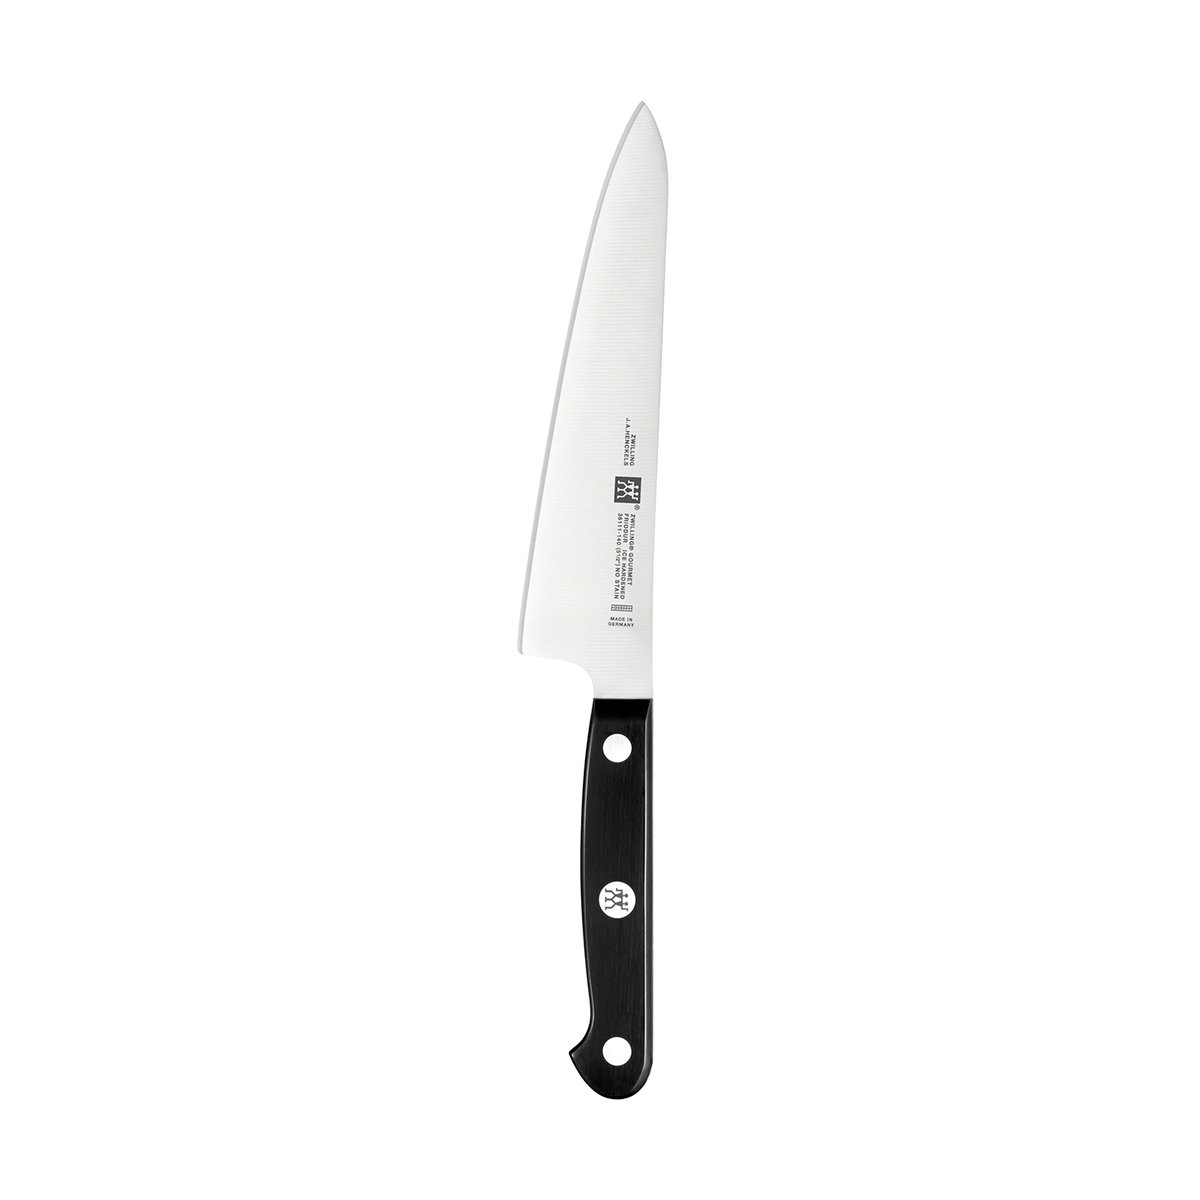 zwilling couteau de cuisine compact zwilling gourmet 14 cm